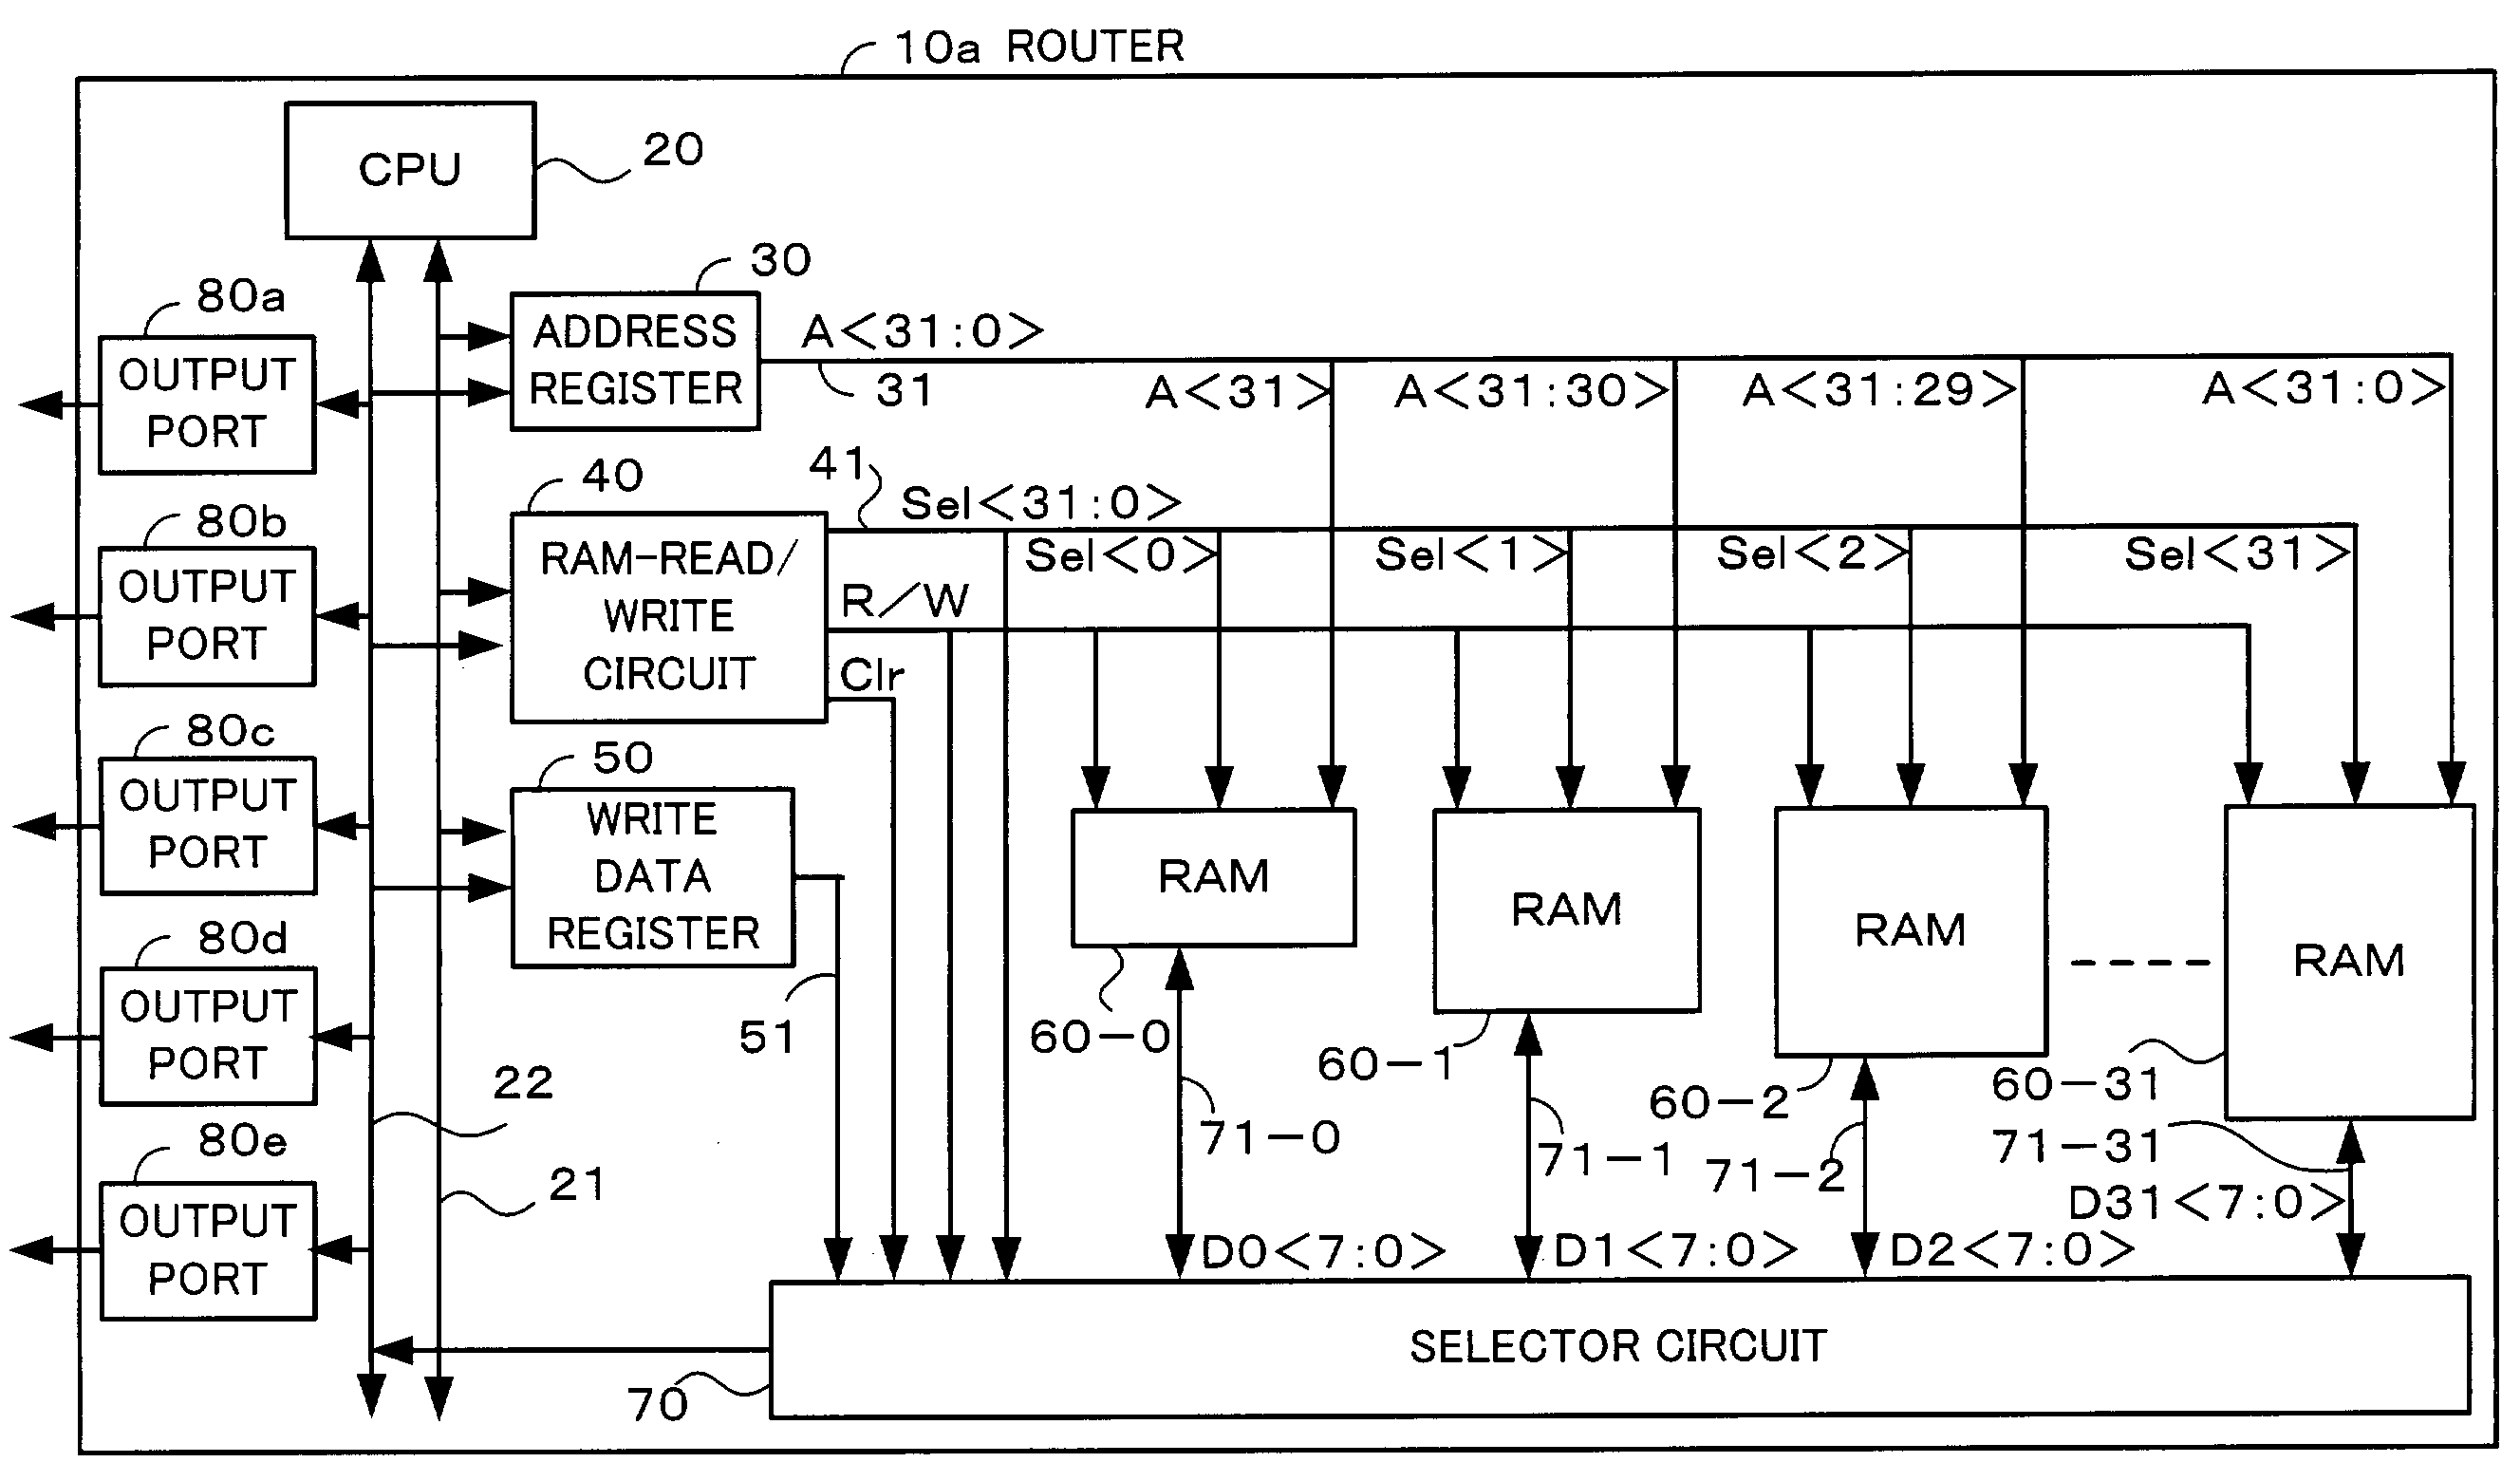 Output port determining apparatus